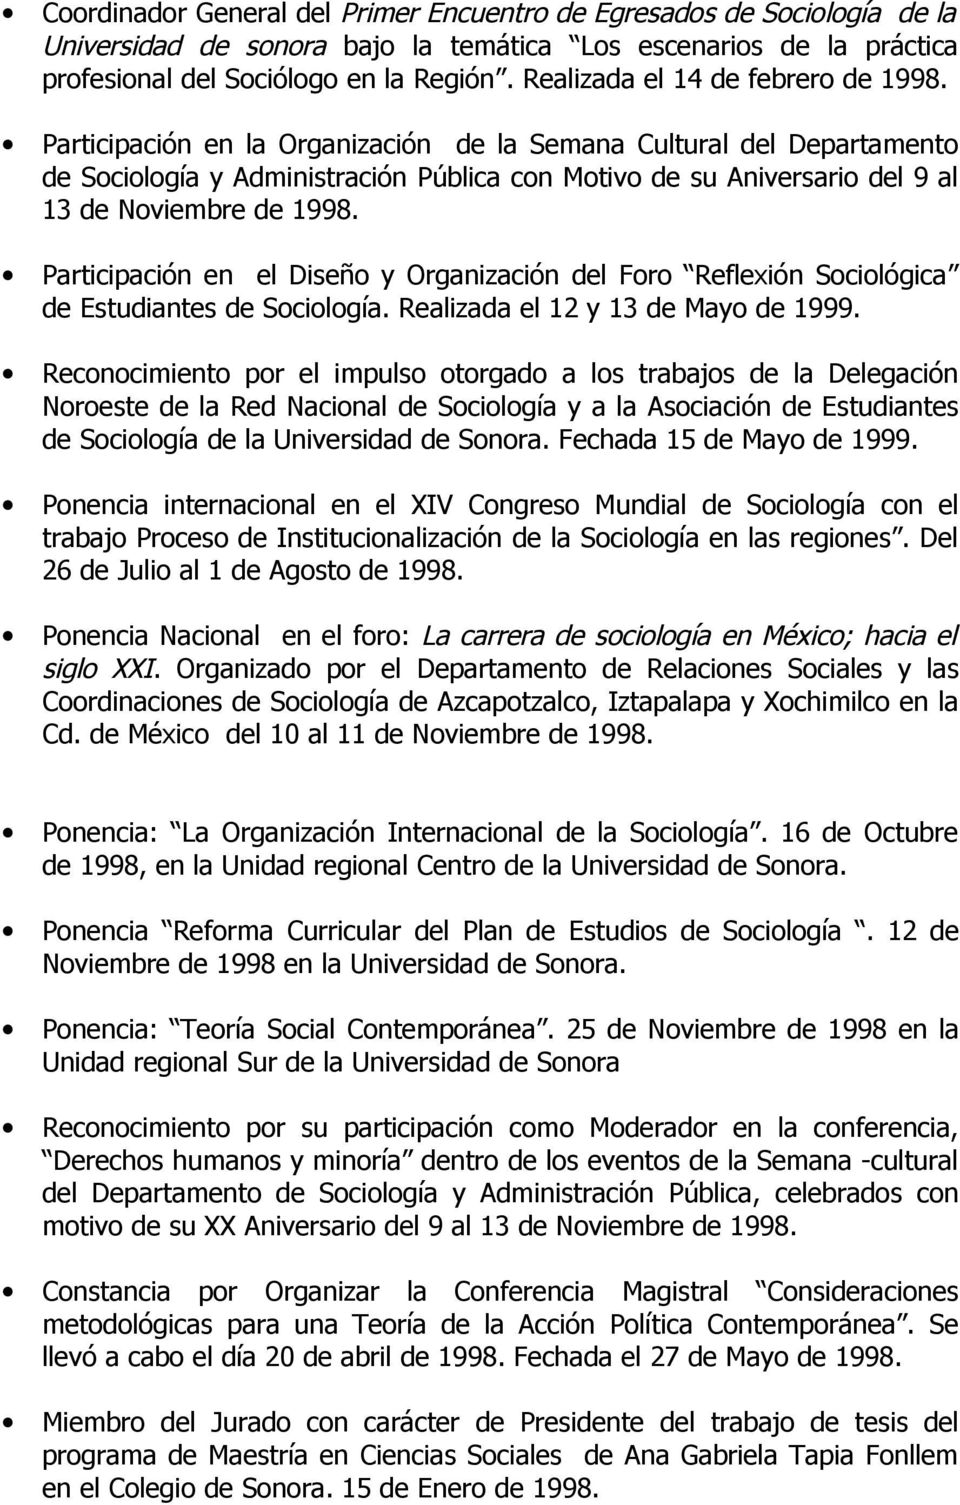 Participación en la Organización de la Semana Cultural del Departamento de Sociología y Administración Pública con Motivo de su Aniversario del 9 al 13 de Noviembre de 1998.